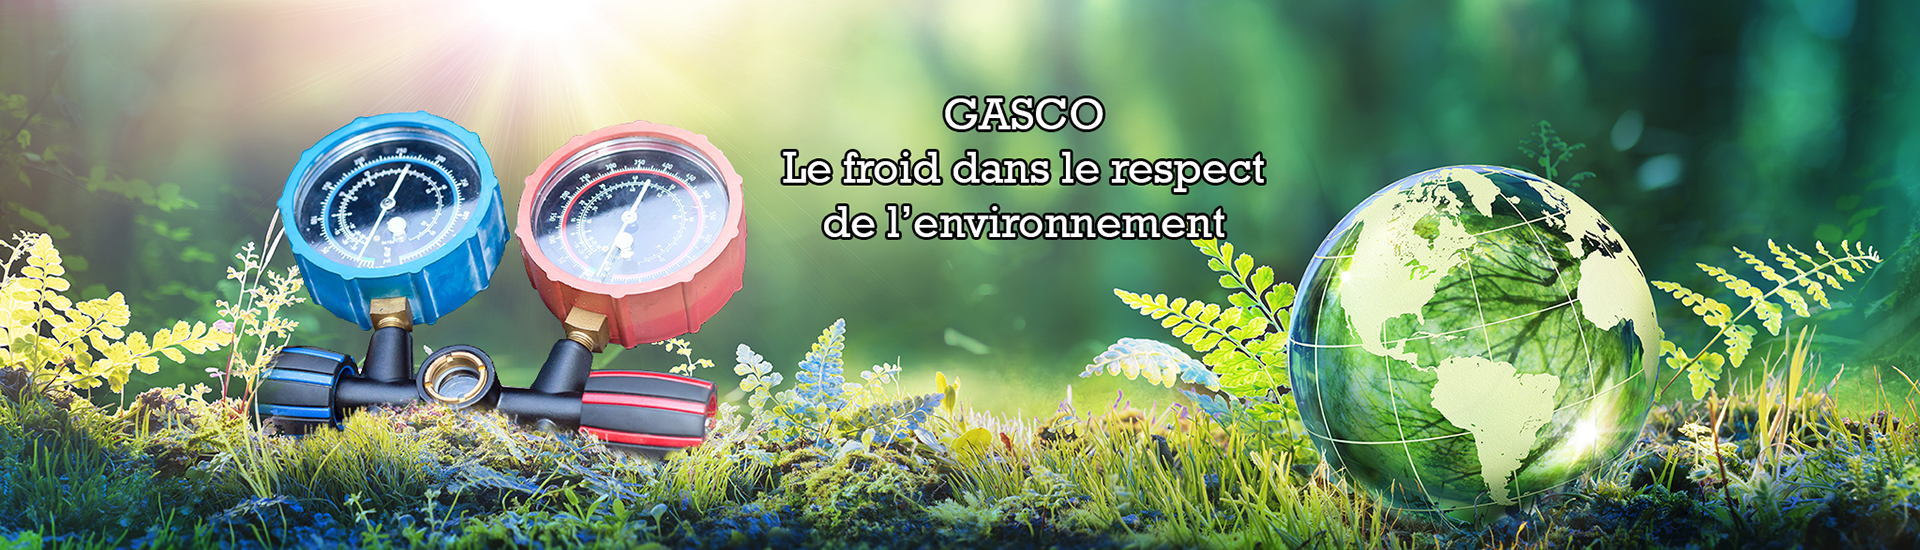 Gasco, le froid dans le respect de l'environnement